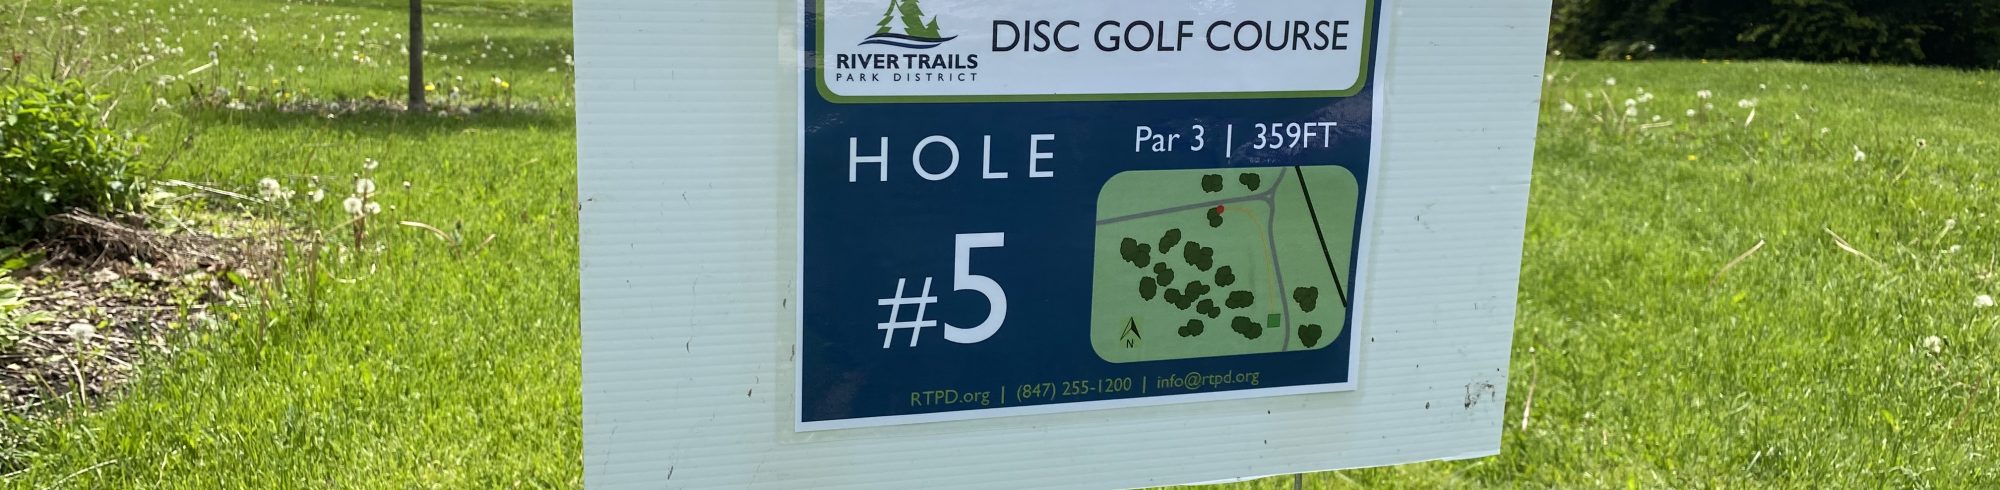 disc golf hole #5